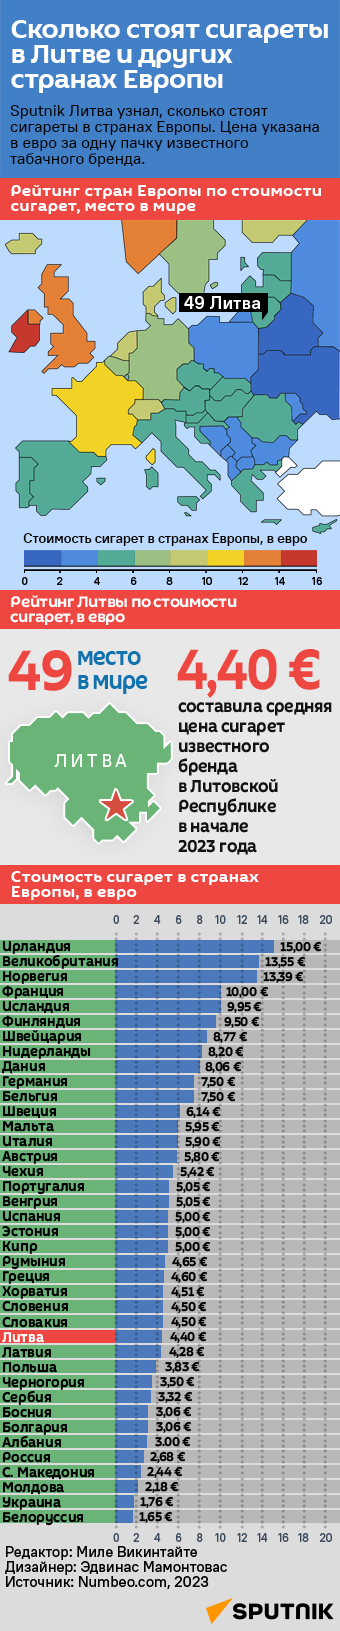 Сколько стоят сигареты в Литве и других странах Европы - Sputnik Литва